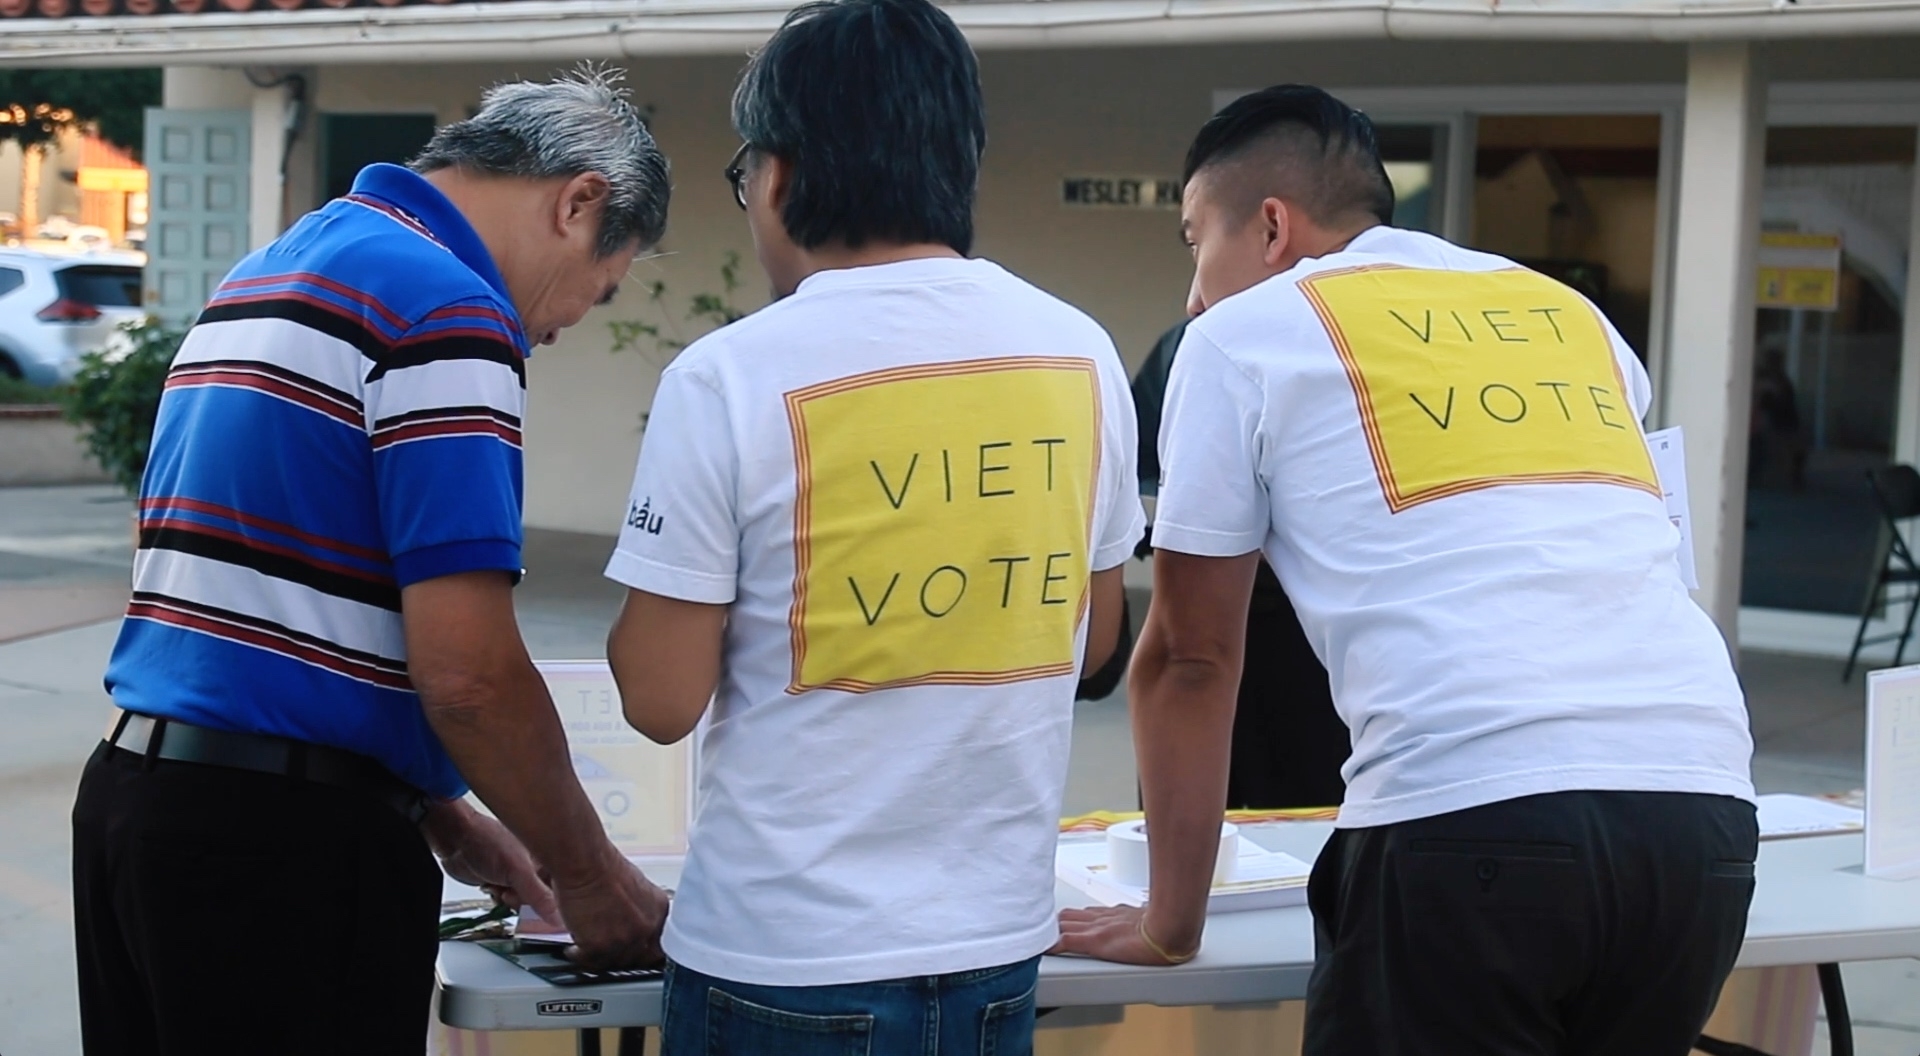 Viet Vote Featured Image